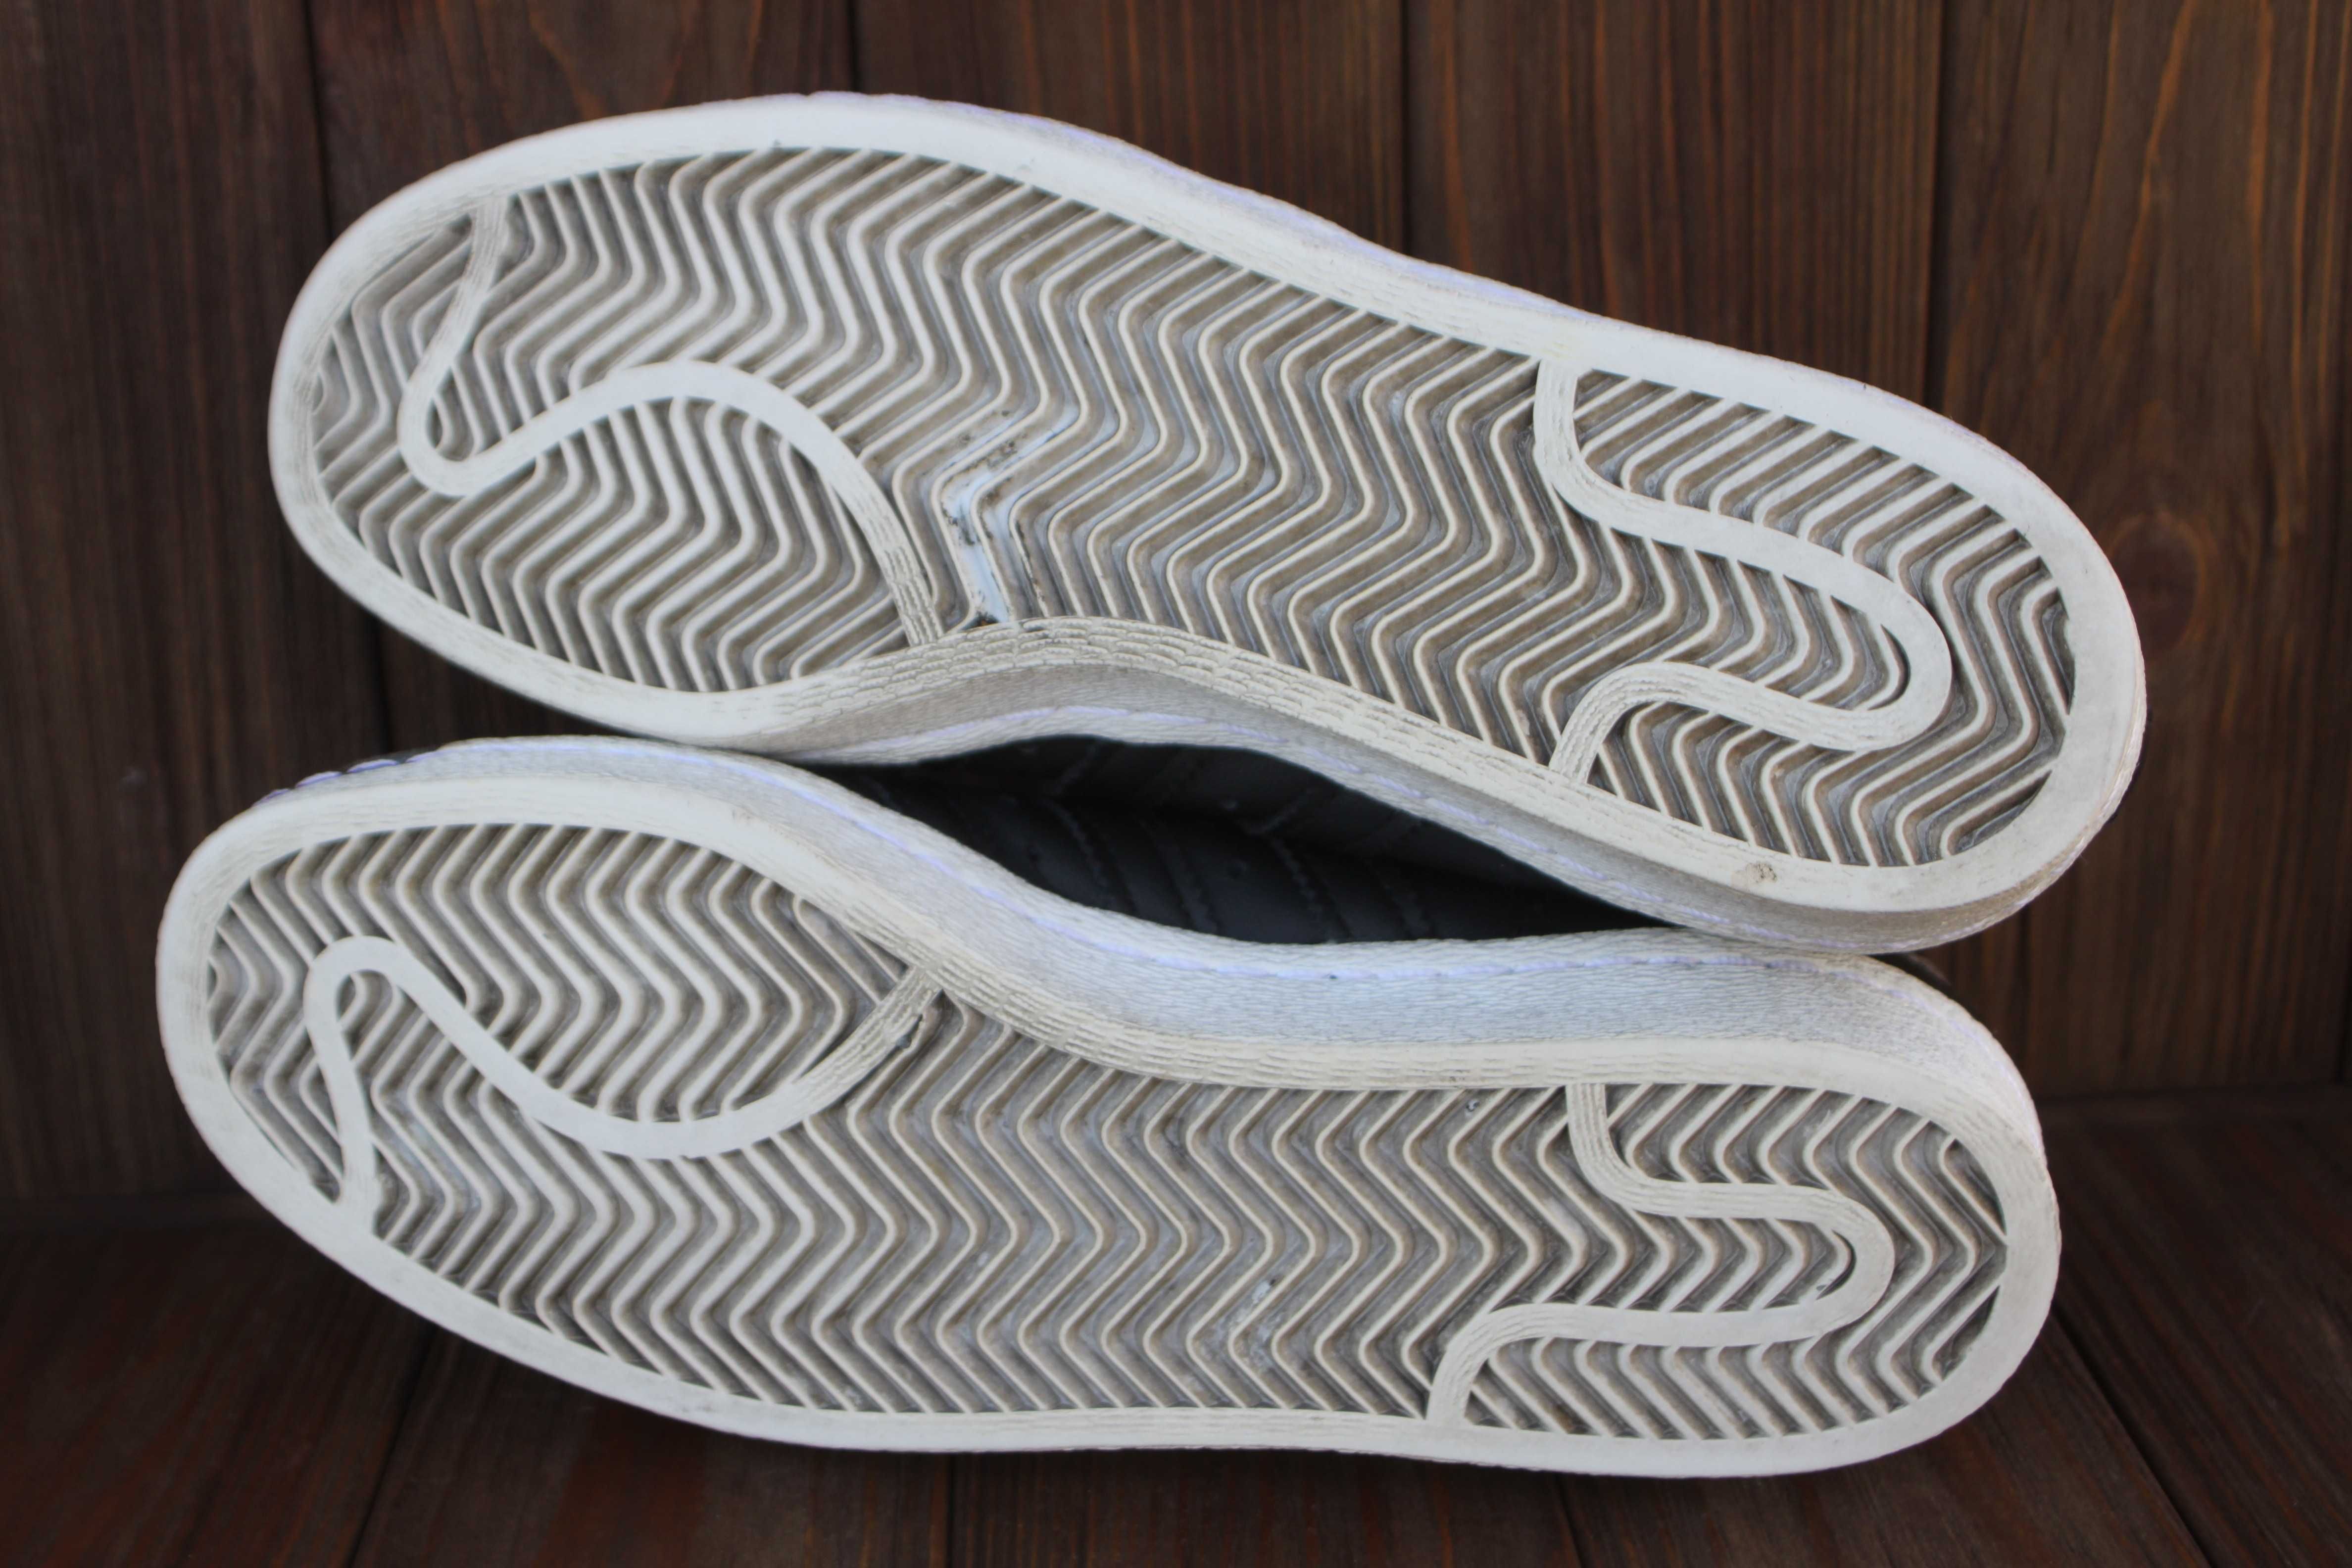 Кроссовки Adidas Superstar 80 кожа оригинал 39р кеды